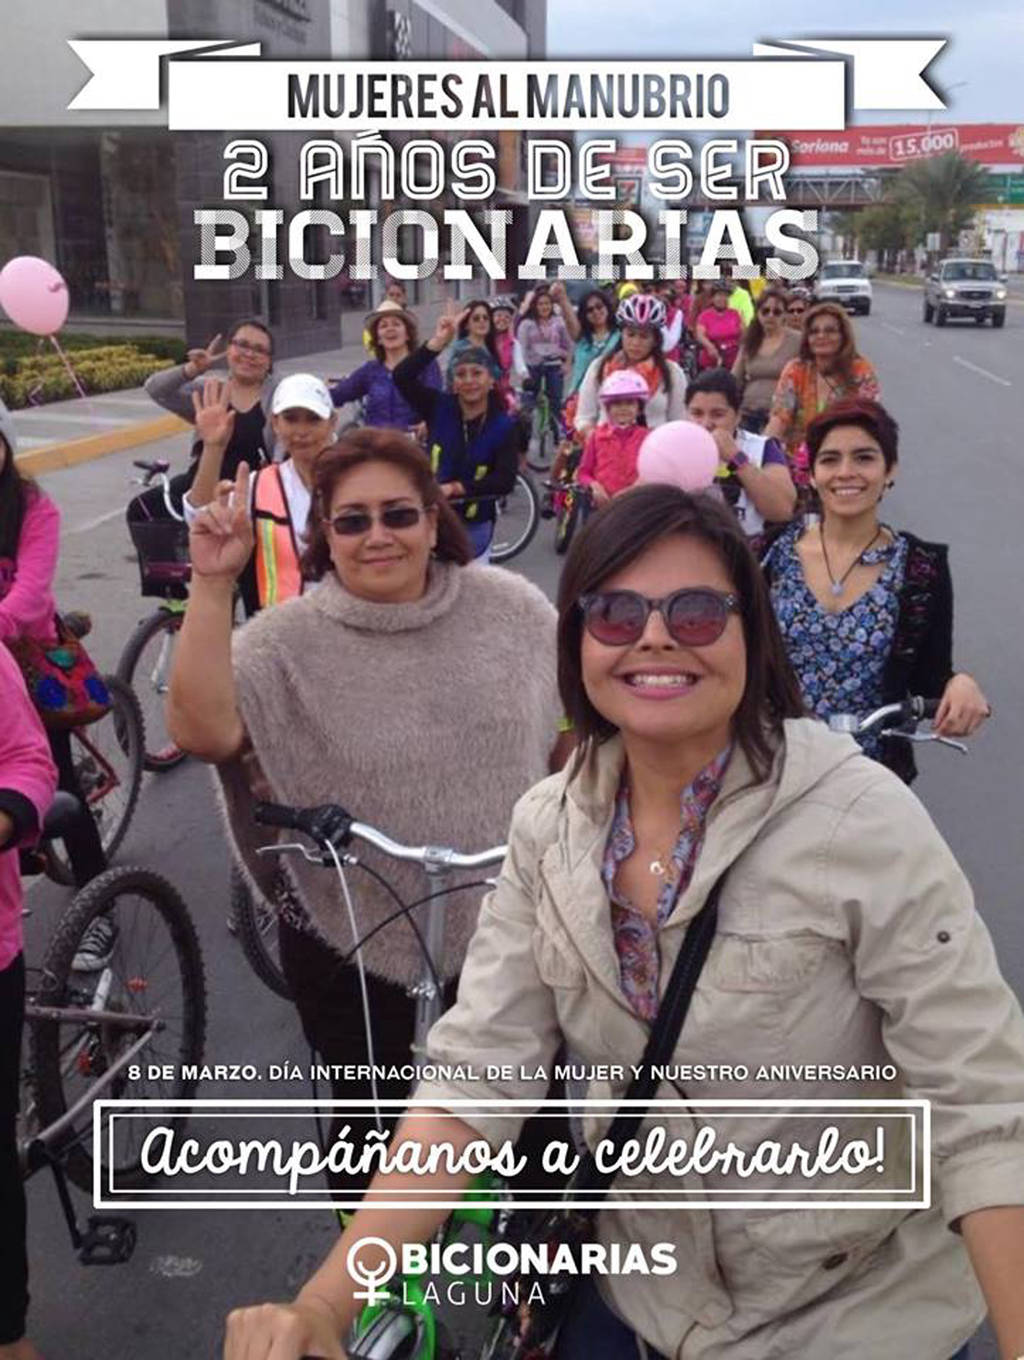 Celebración. Bicionarias Laguna prepara una serie de actividades para festejar su segundo aniversario y a las mujeres. (CORTESÍA)